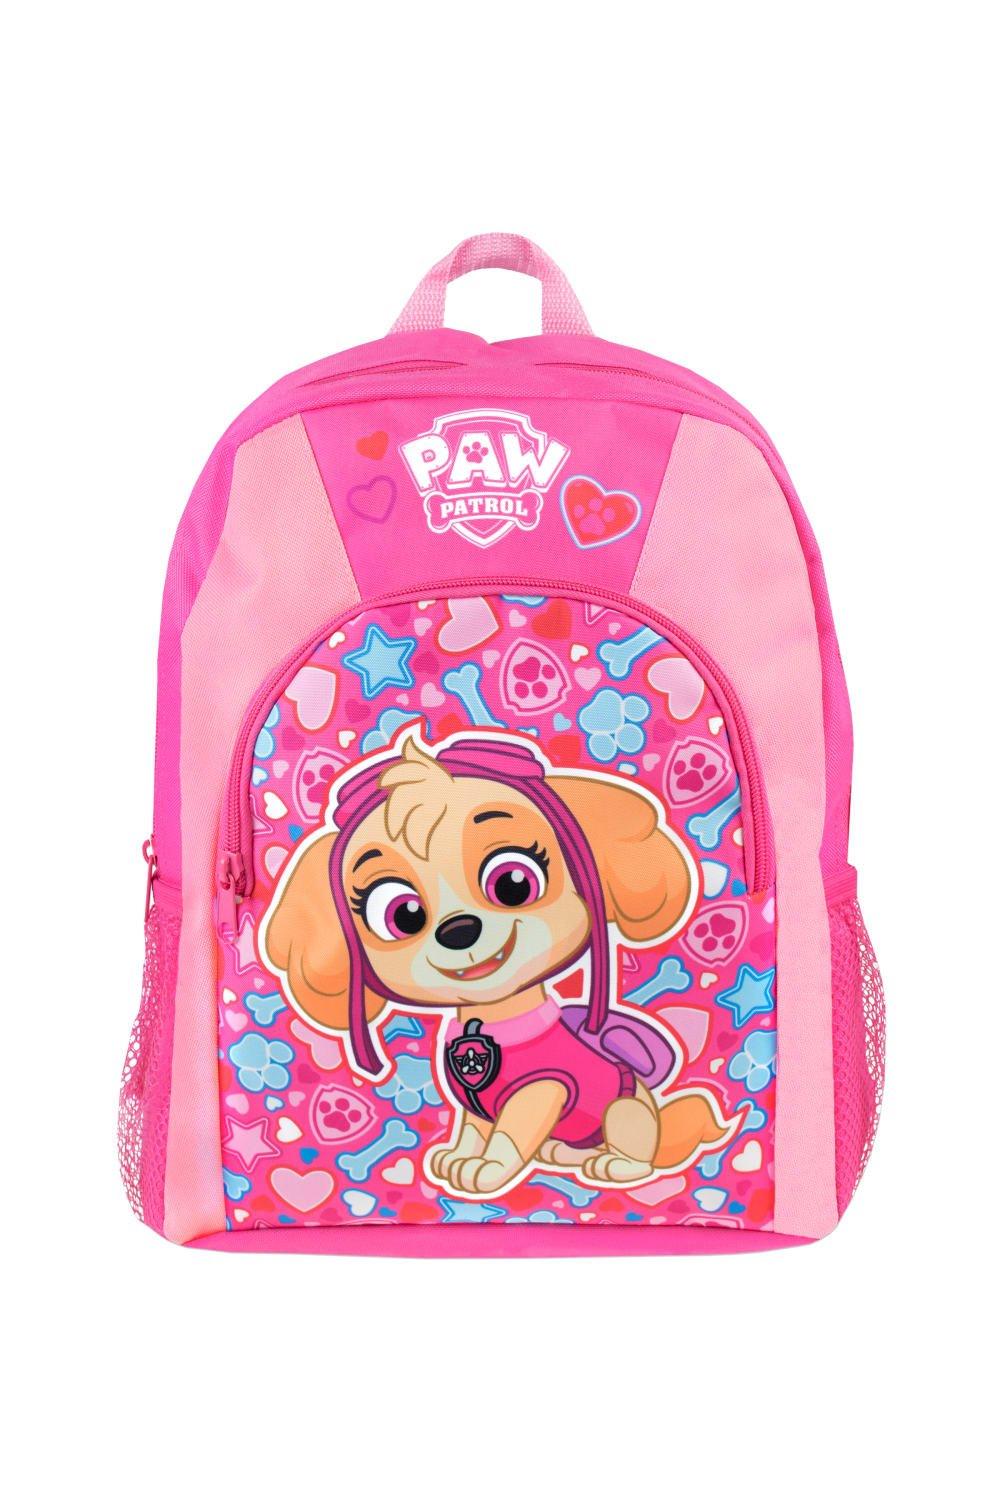 Детский рюкзак Skye Paw Patrol, розовый рюкзак детскийгонщик и скай paw patrol paw patrol 7987669